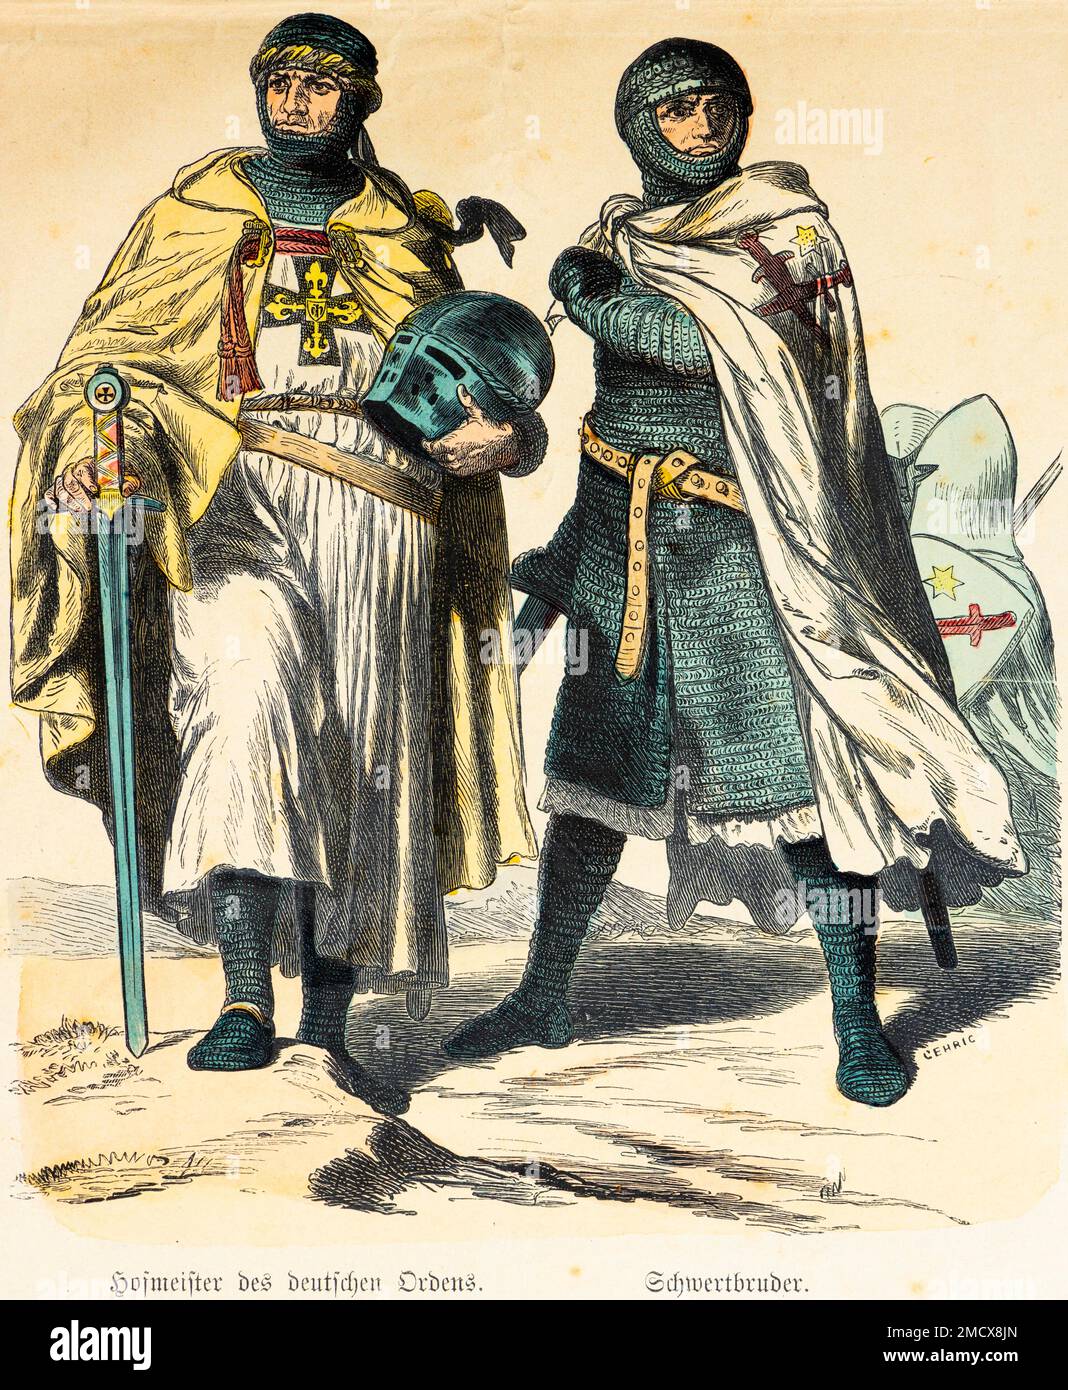 Münchner Bildergalerie, Kostüme, 12. Und 13. Jahrhundert, Hofmeister des Deutschen Ordens (links), Schwertbruder, Schwert, Helm, Ritter, Von knight Stockfoto